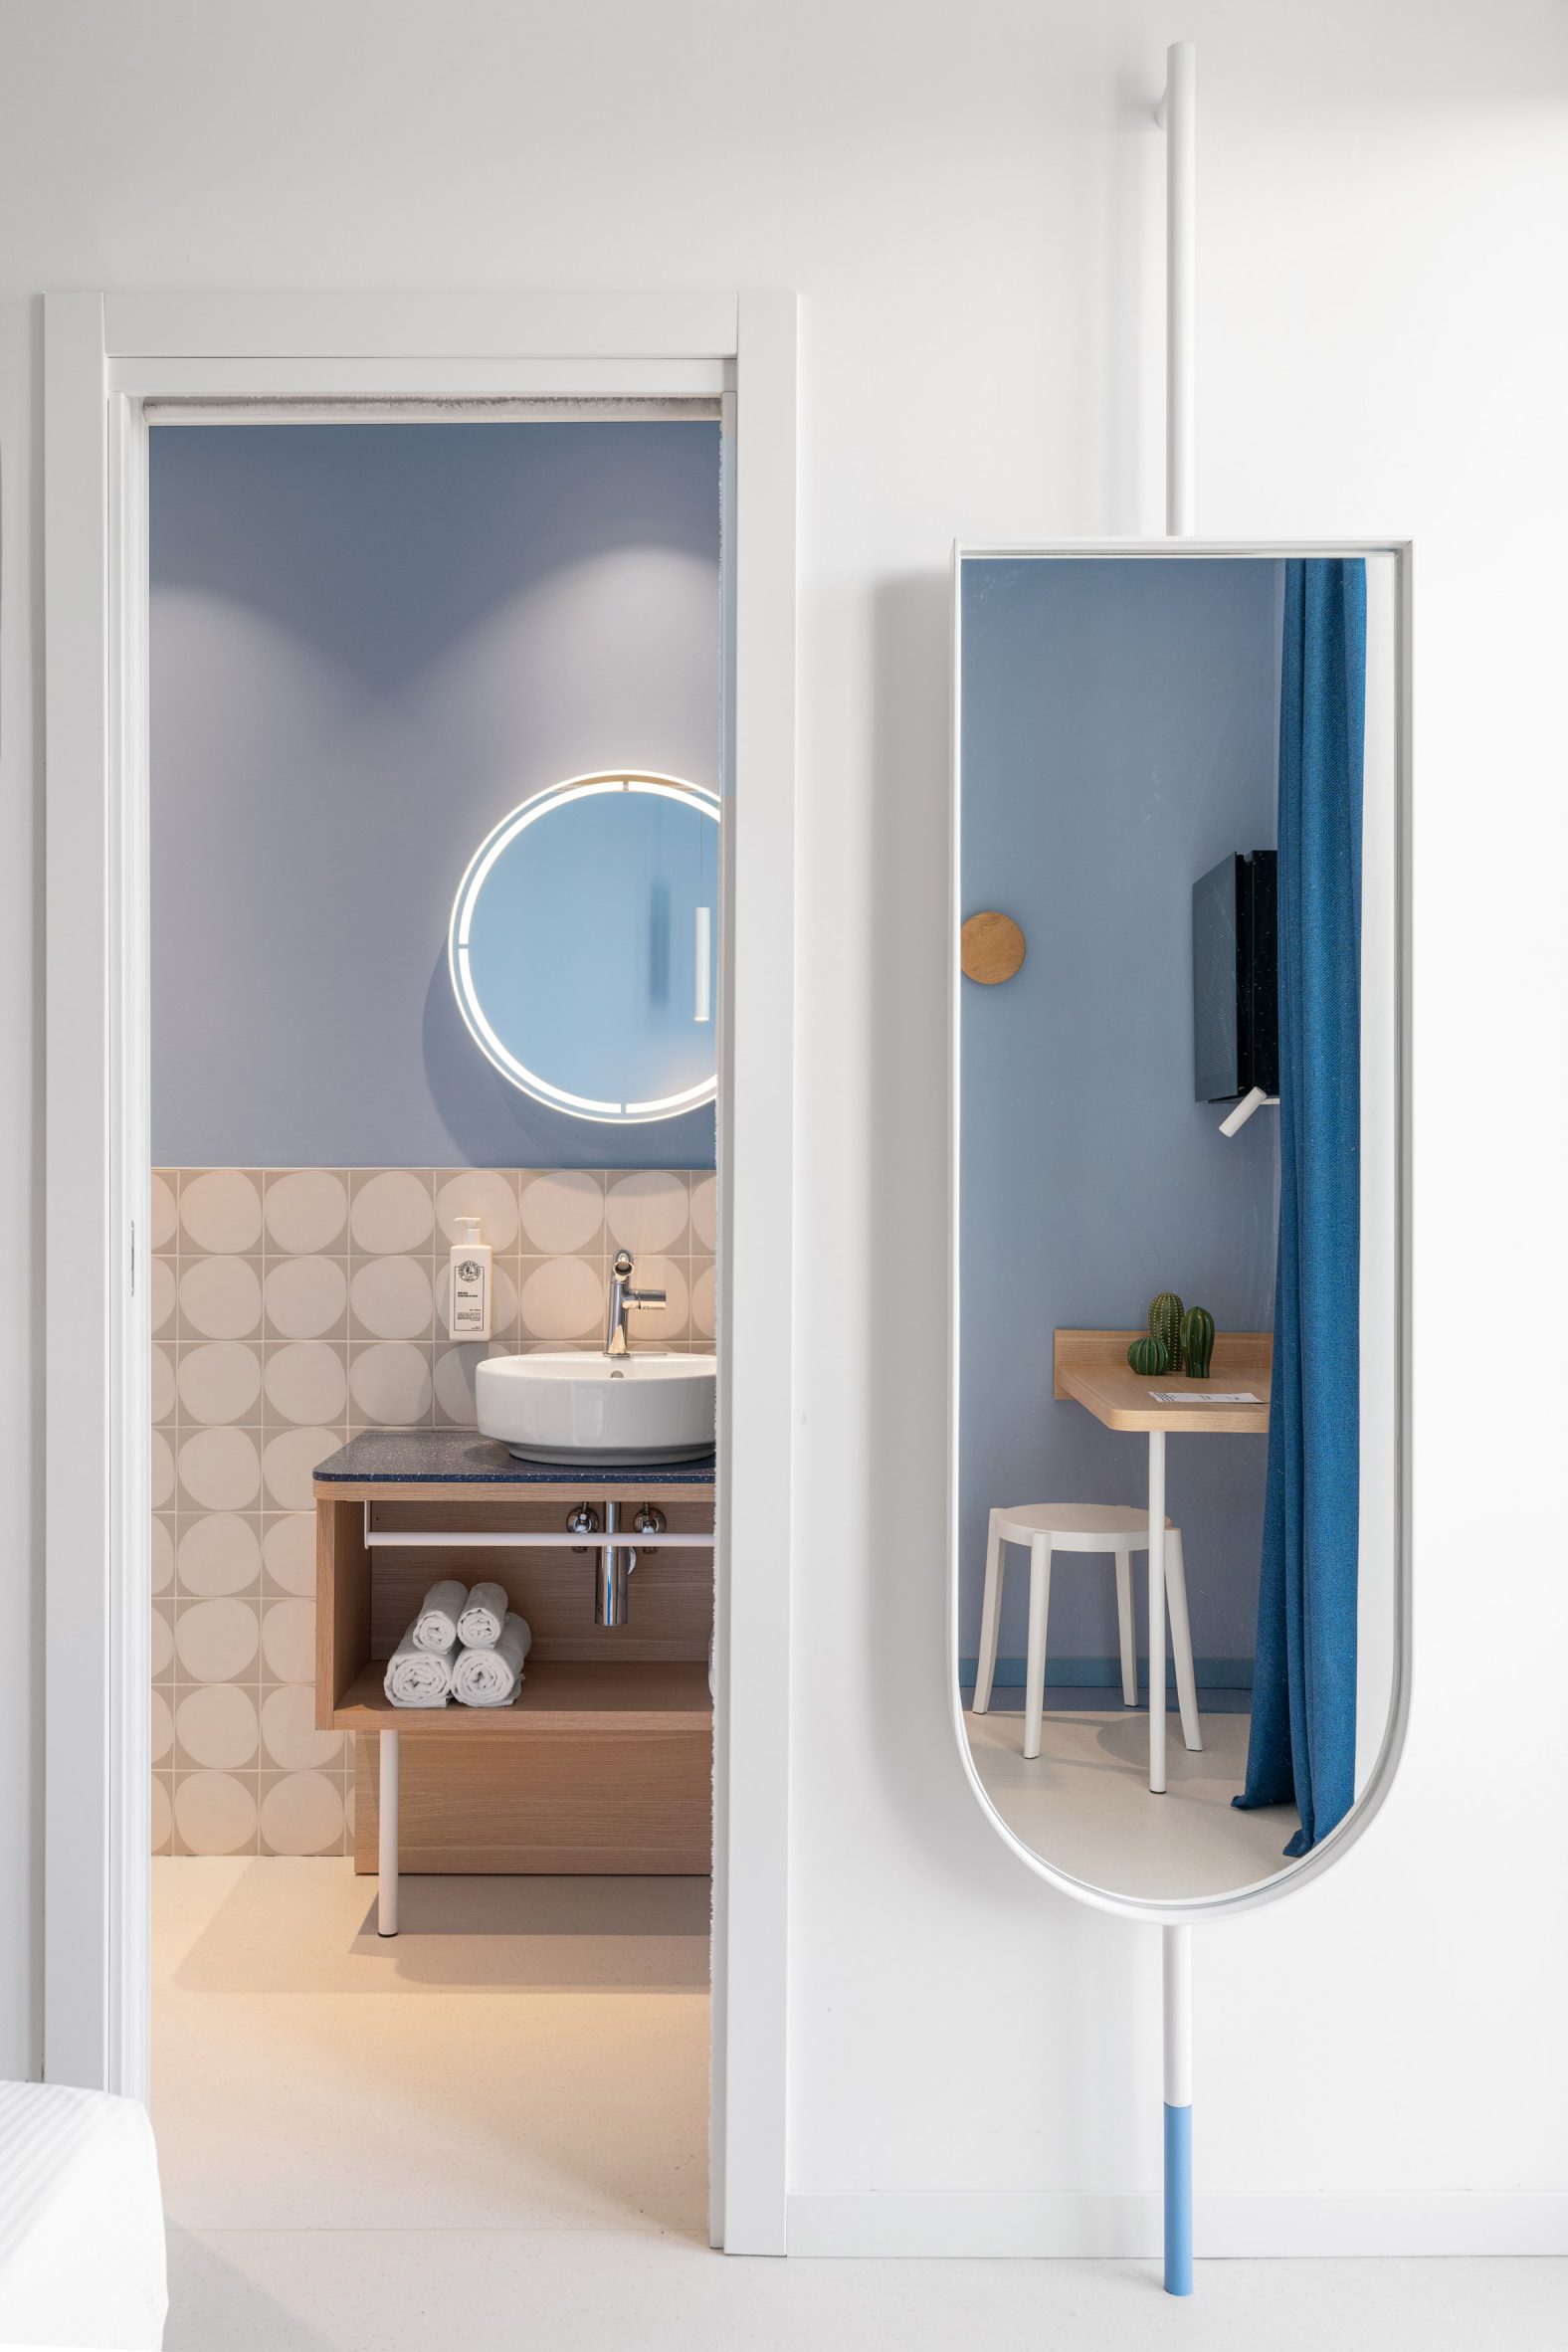 Bathroom and mirror inside hotel in Italy by Fiorini D'Amico Architetti (FDA)